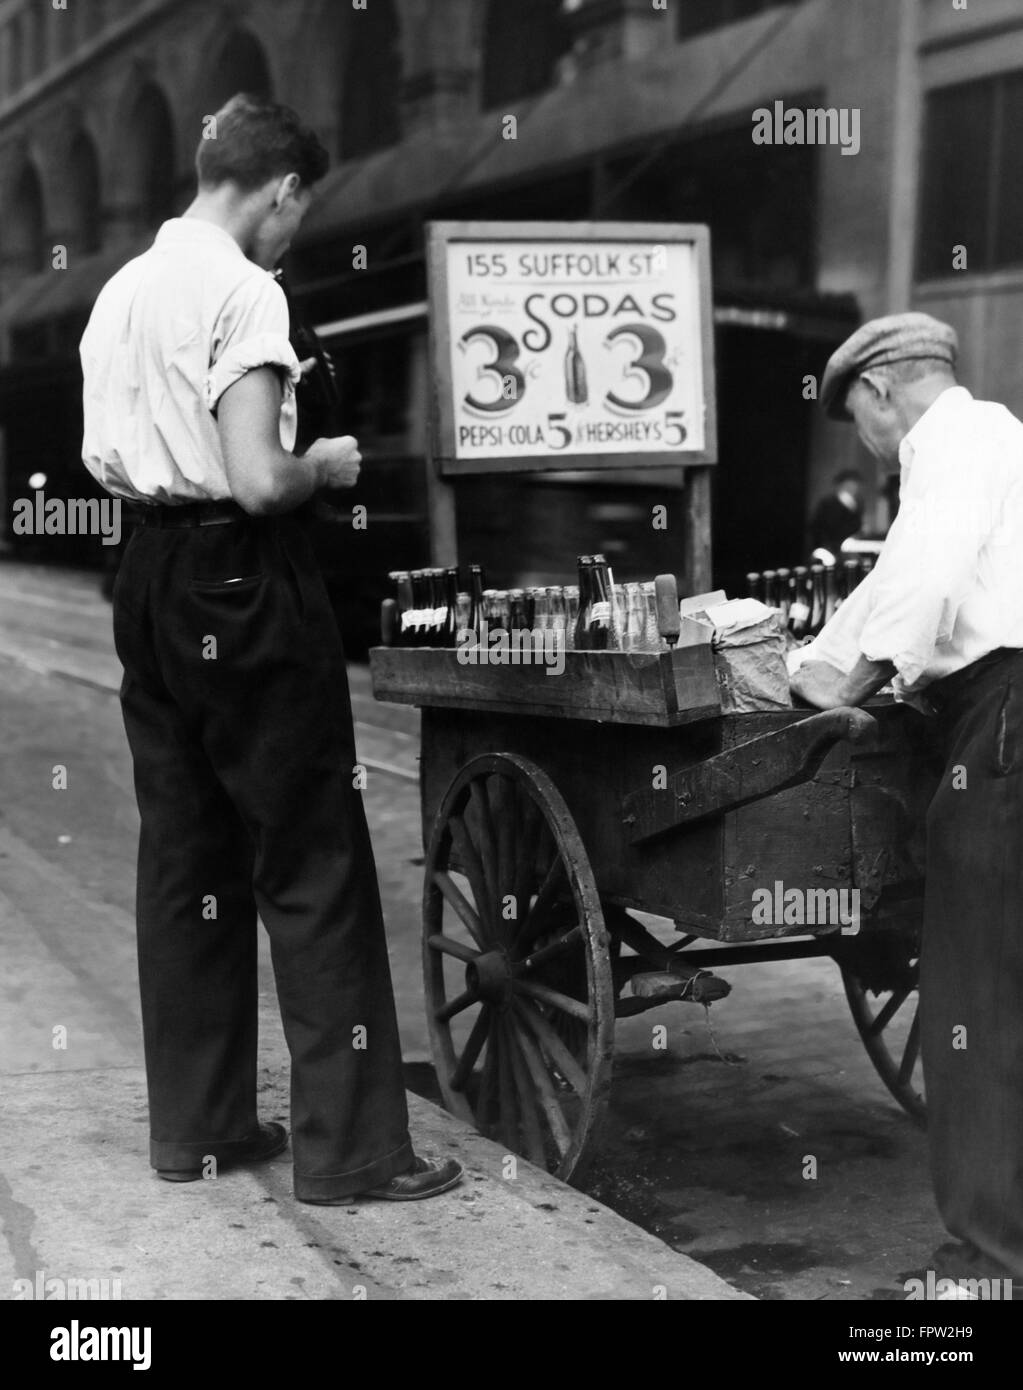 1930s GIOVANE CLIENTE E MARCIAPIEDE STREET VENDER con il camion di vendita di bibite gassate per 3 centesimi e 5 centesimi per Pepsi Cola Foto Stock